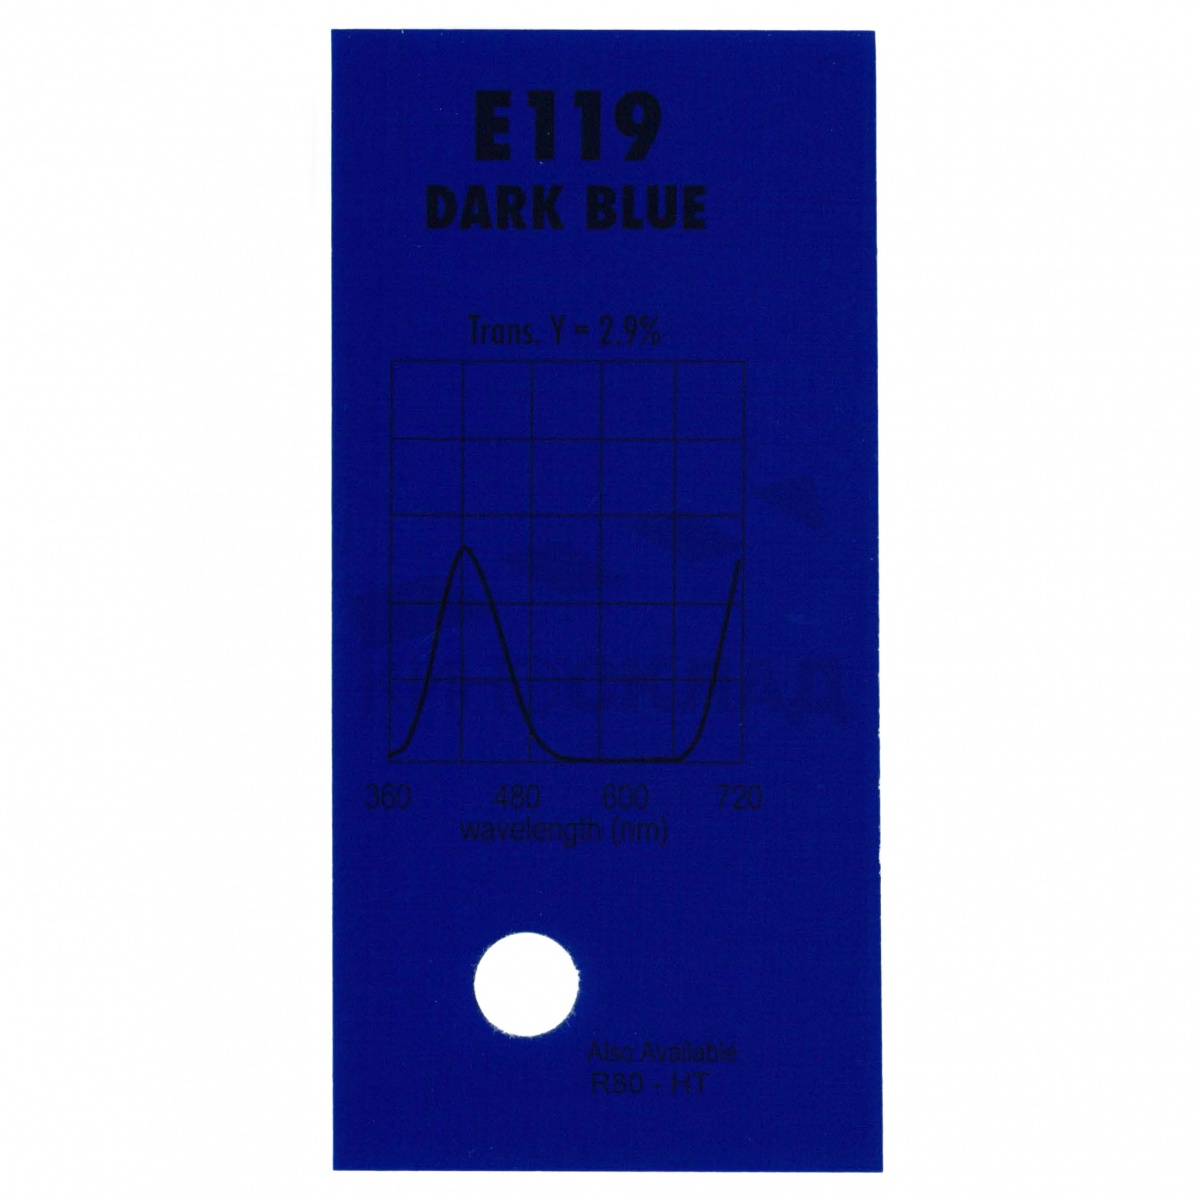 Детальная картинка товара LEE Filters # 119 Dark Blue в магазине Музыкальная Тема